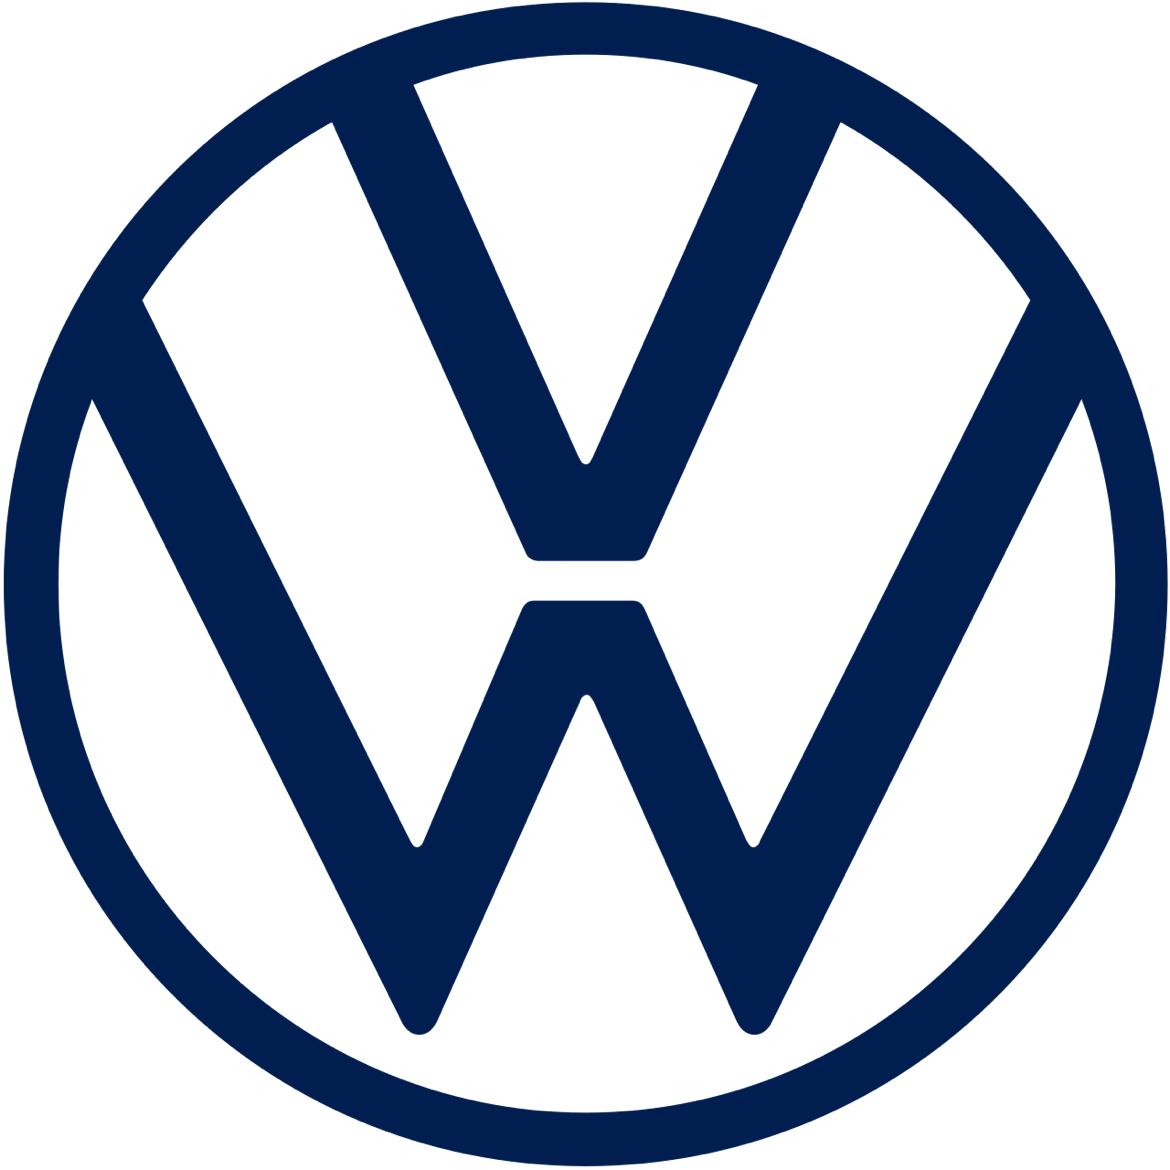 Volkswagen's images